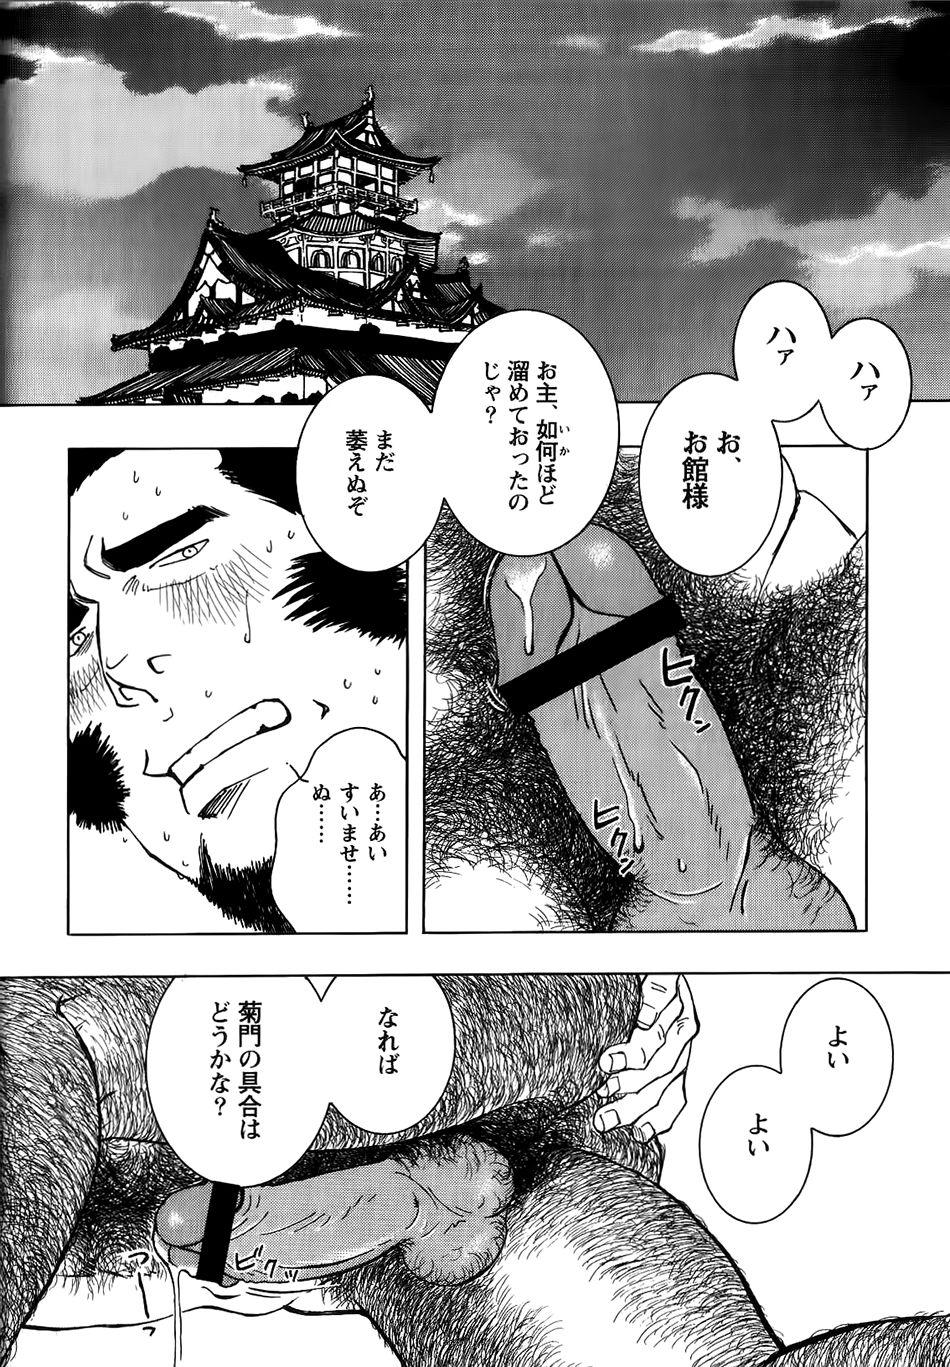 Nobunaga's lotion man 12